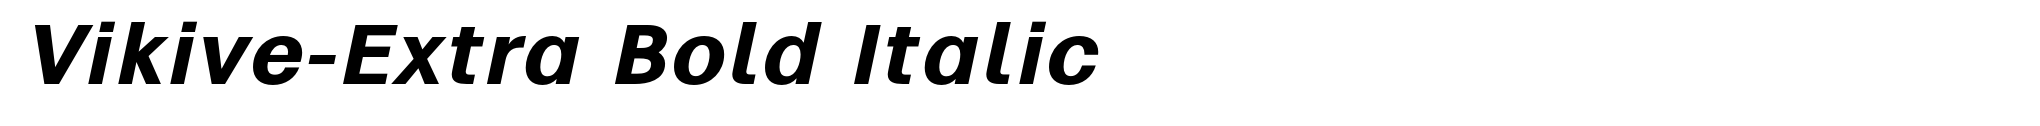 Vikive-Extra Bold Italic image